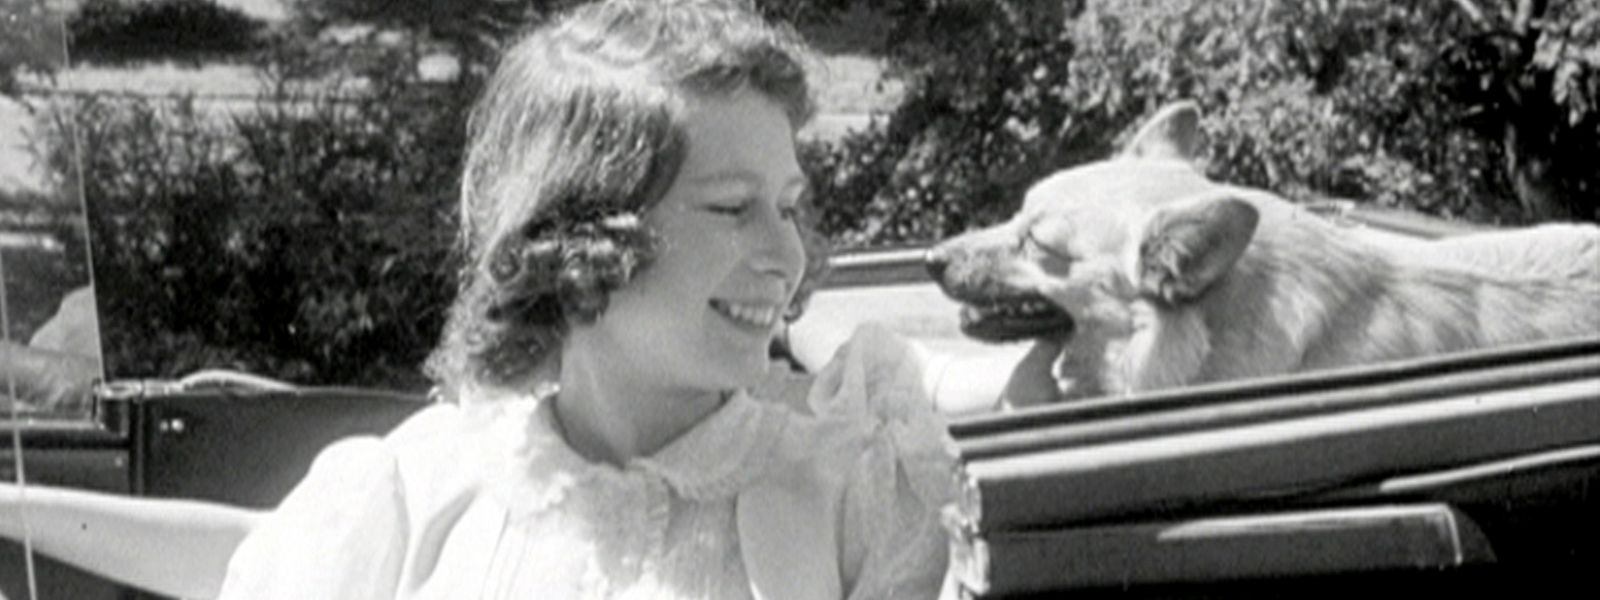 Eine Liebe, die niemals vergeht: Die junge Prinzessin Elizabeth im Jahr 1941 mit ihrem ersten Corgi auf Schloss Windsor.